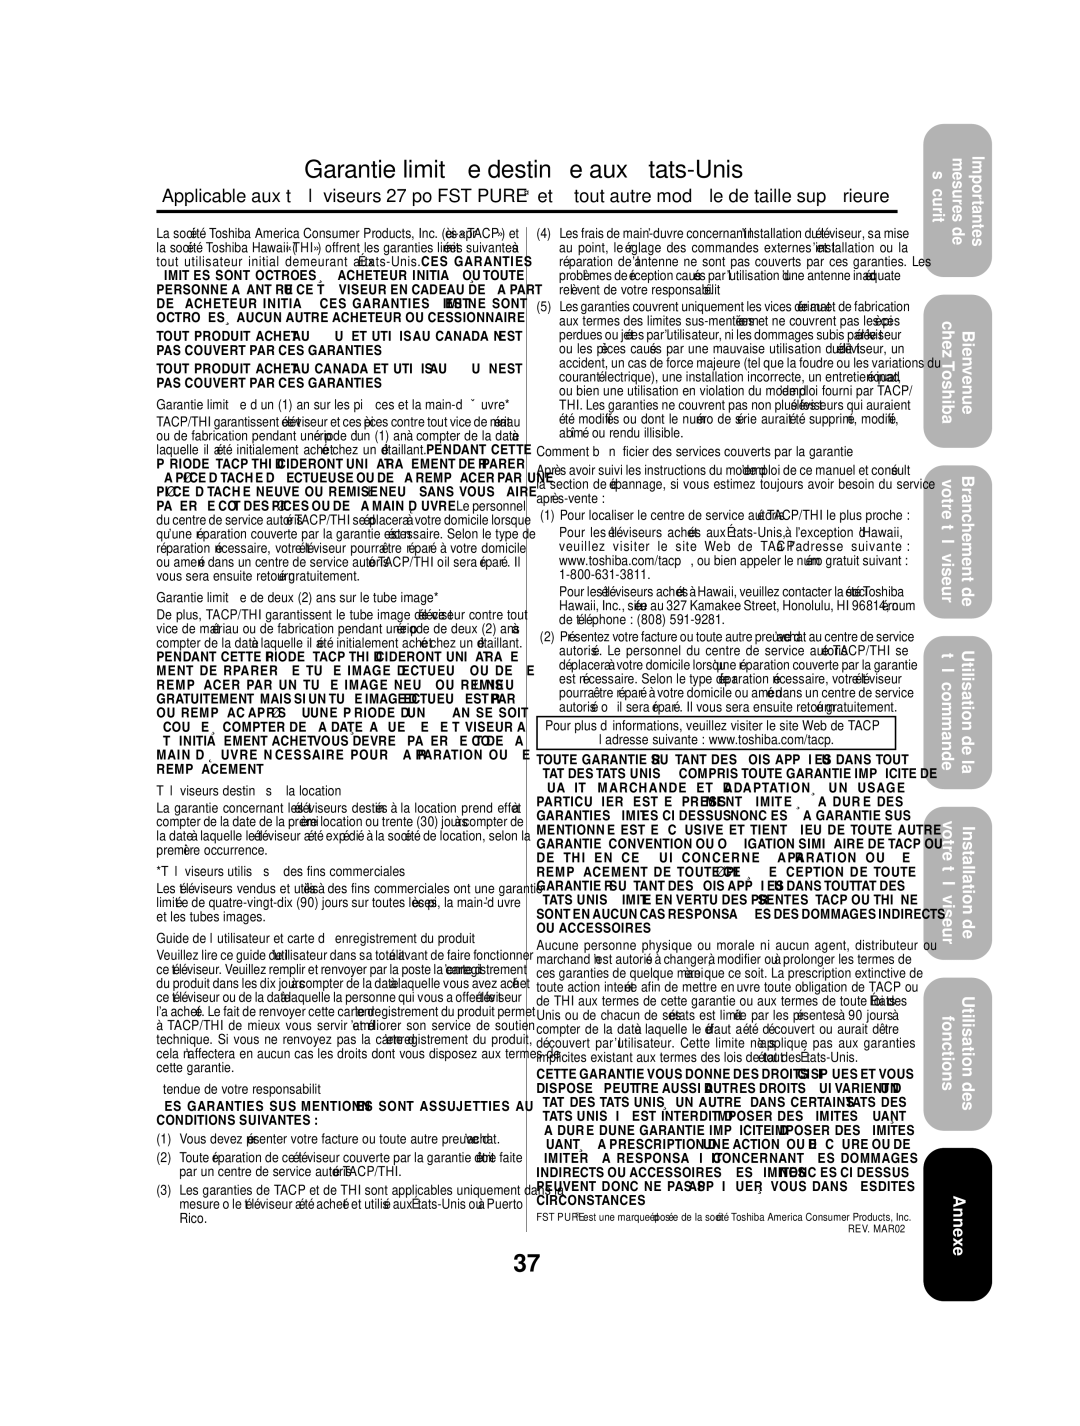 Toshiba 27AF53 appendix Garantie limitée destinée aux États-Unis 